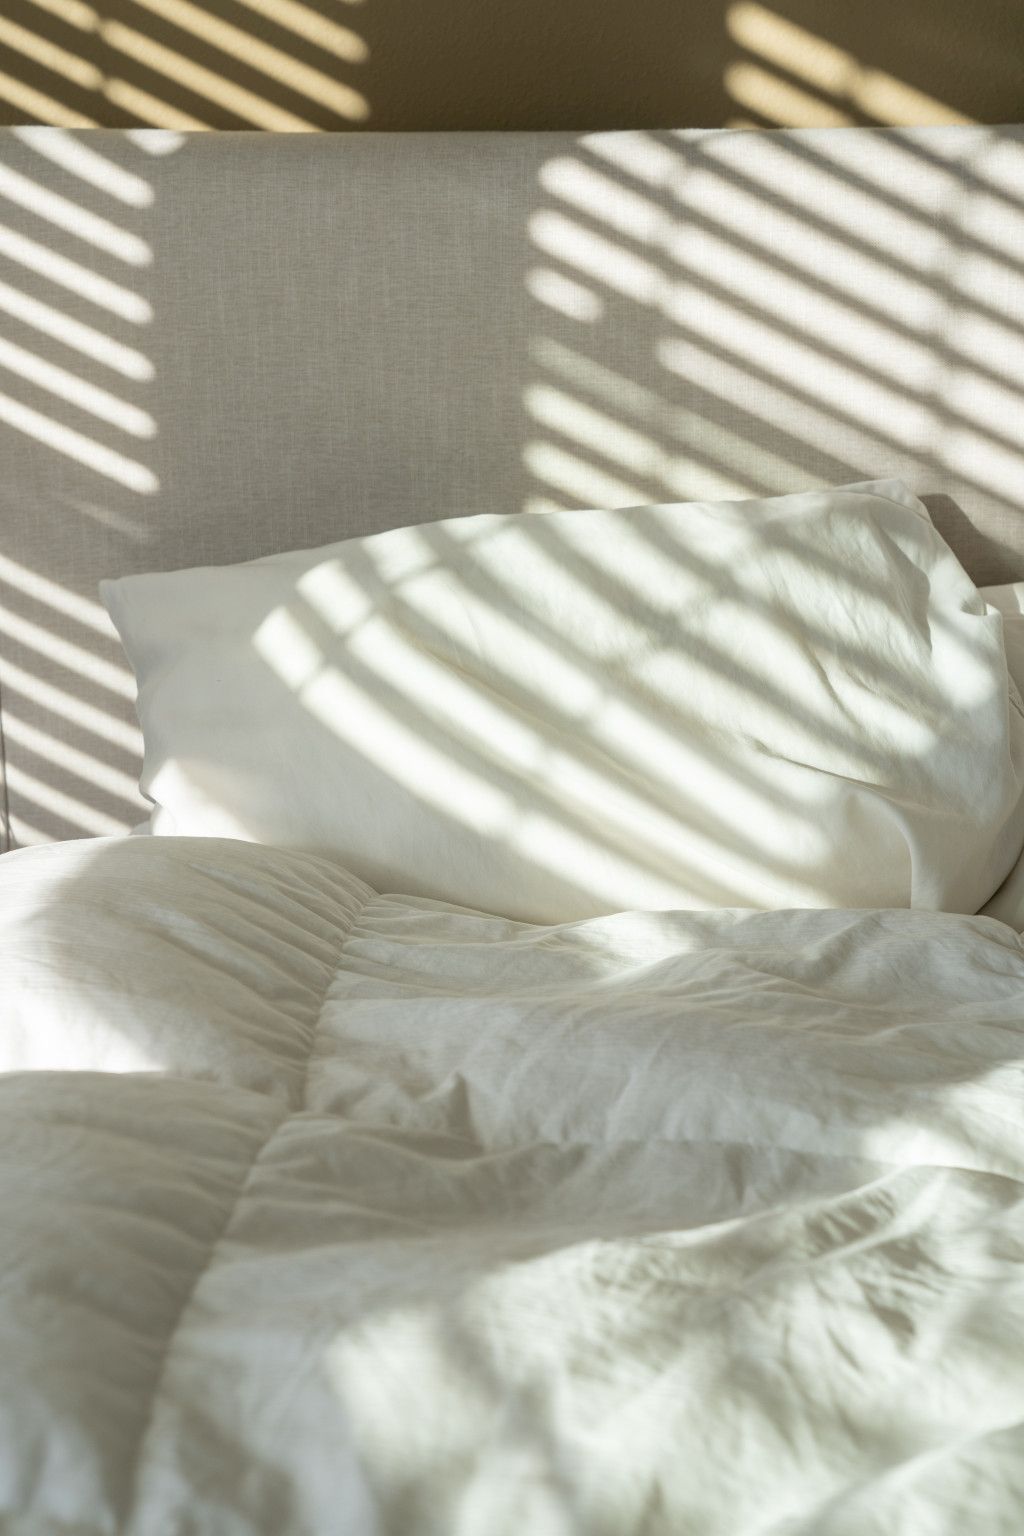 Das Bild zeigt ein Bett im Sonnenlicht als Sinnbild für ein unbeschwertes Erwachen nach gutem Schlaf ohne Verspannungen im Nacken oder Rücken